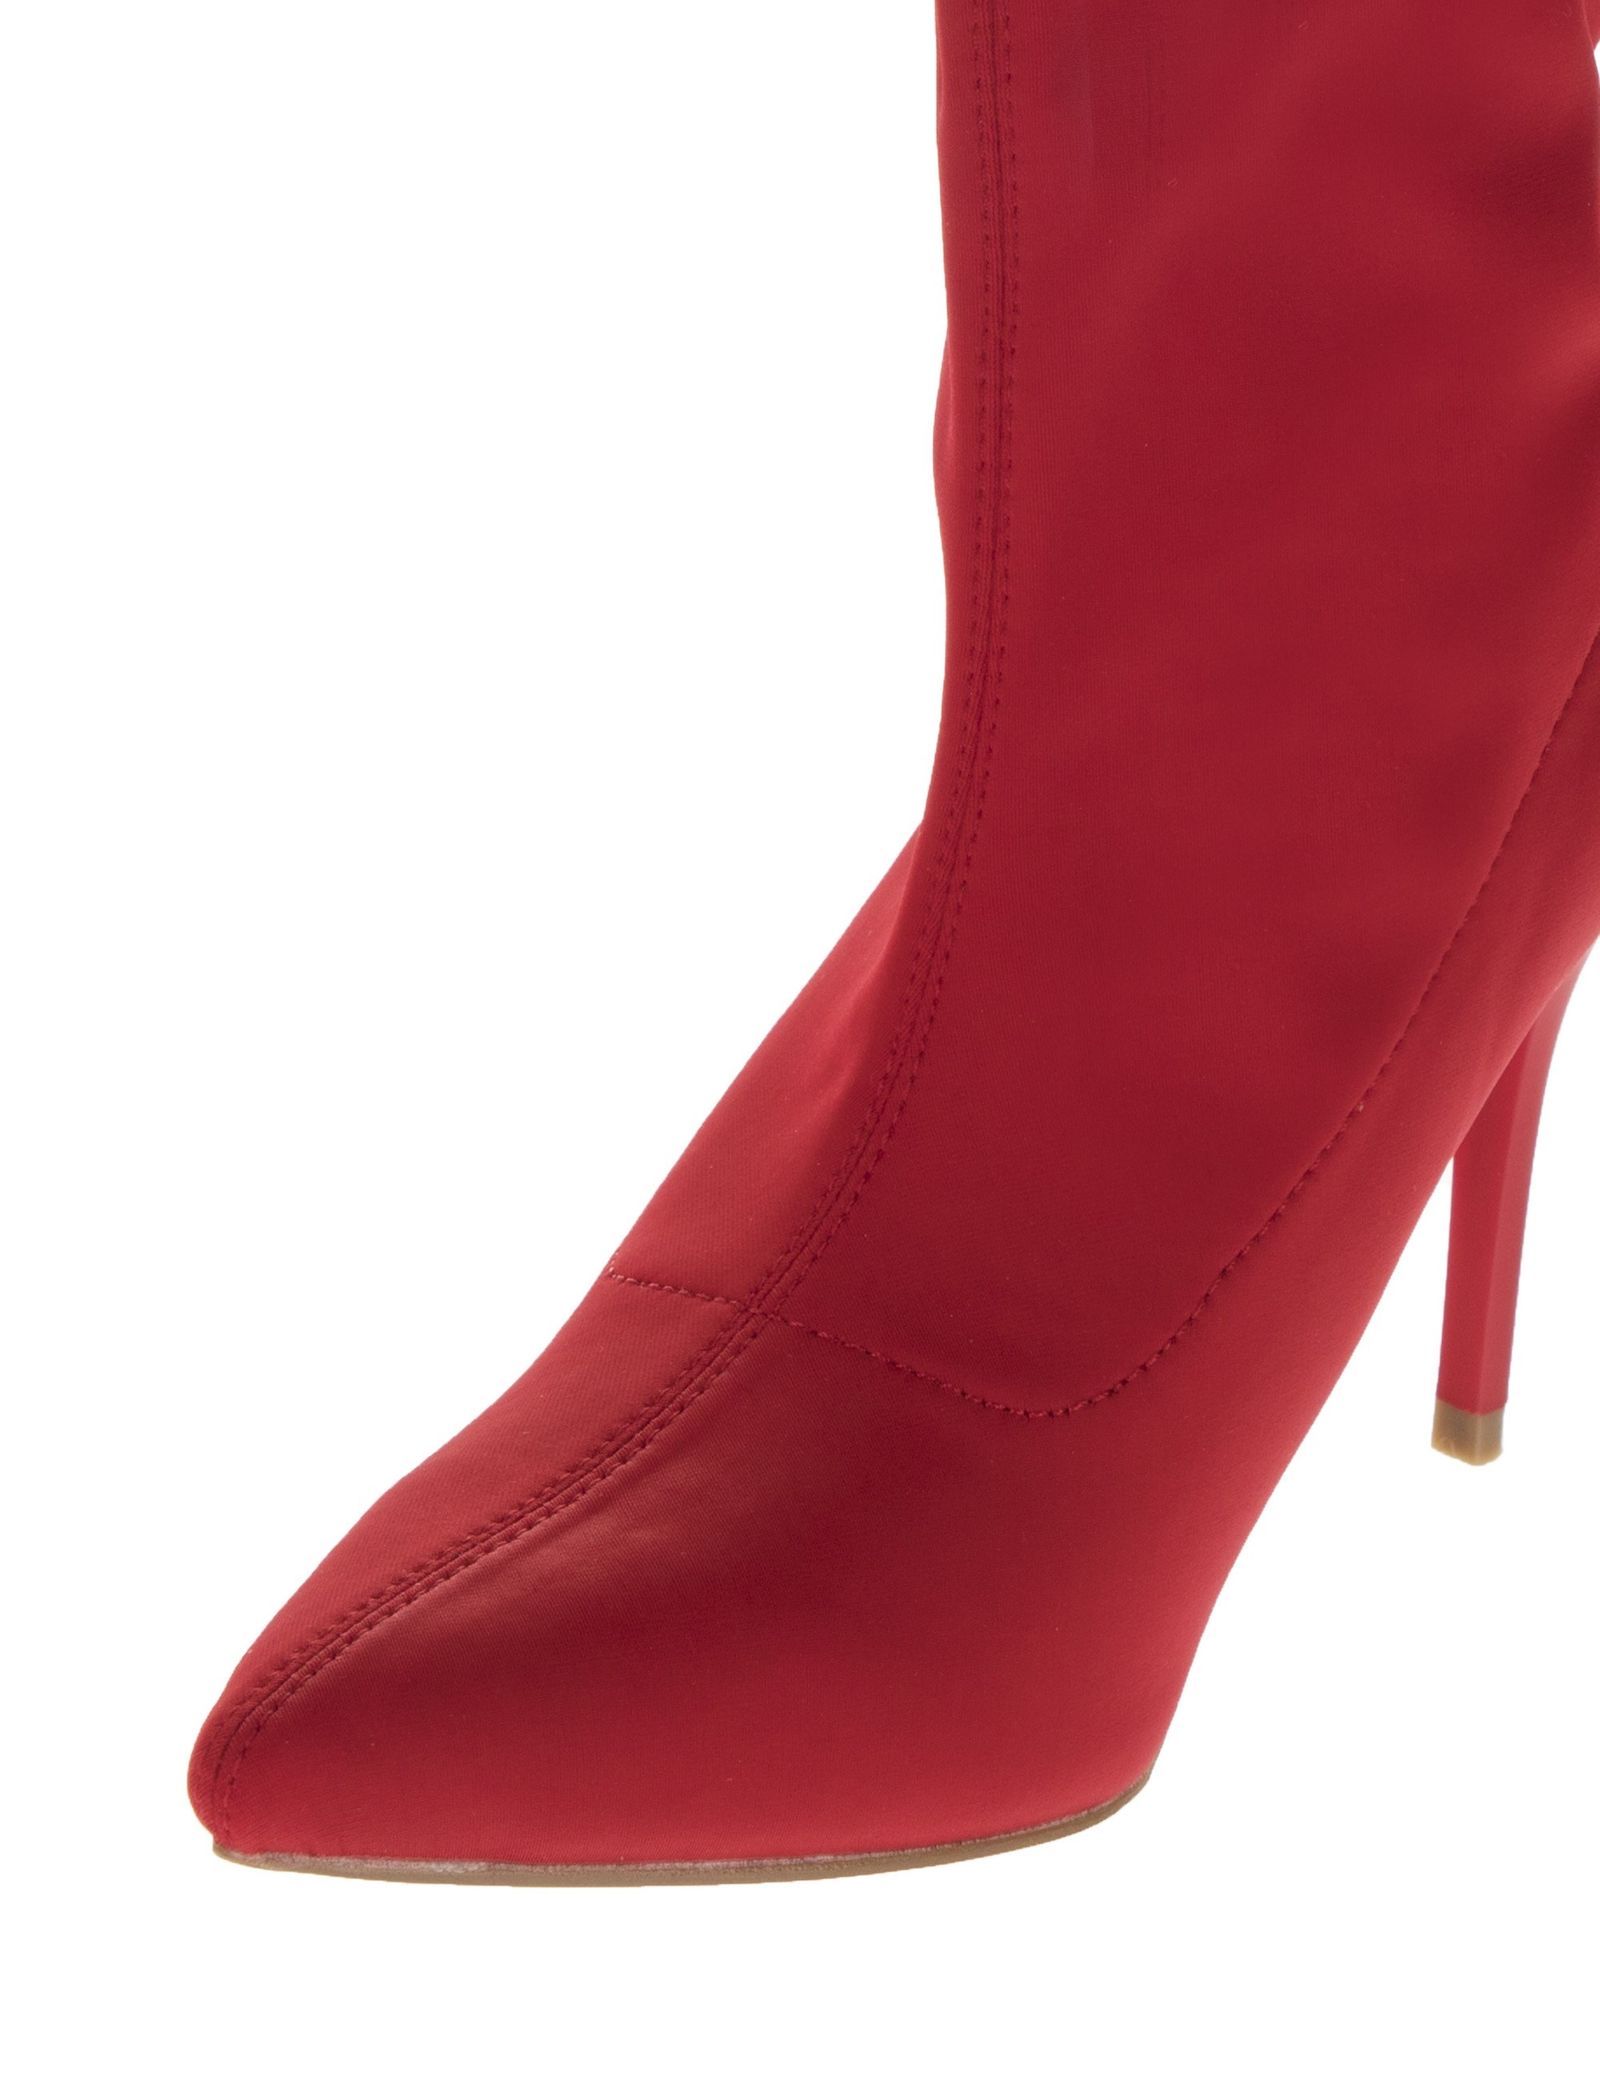 کفش پاشنه بلند زنانه - مالین - قرمز - 7